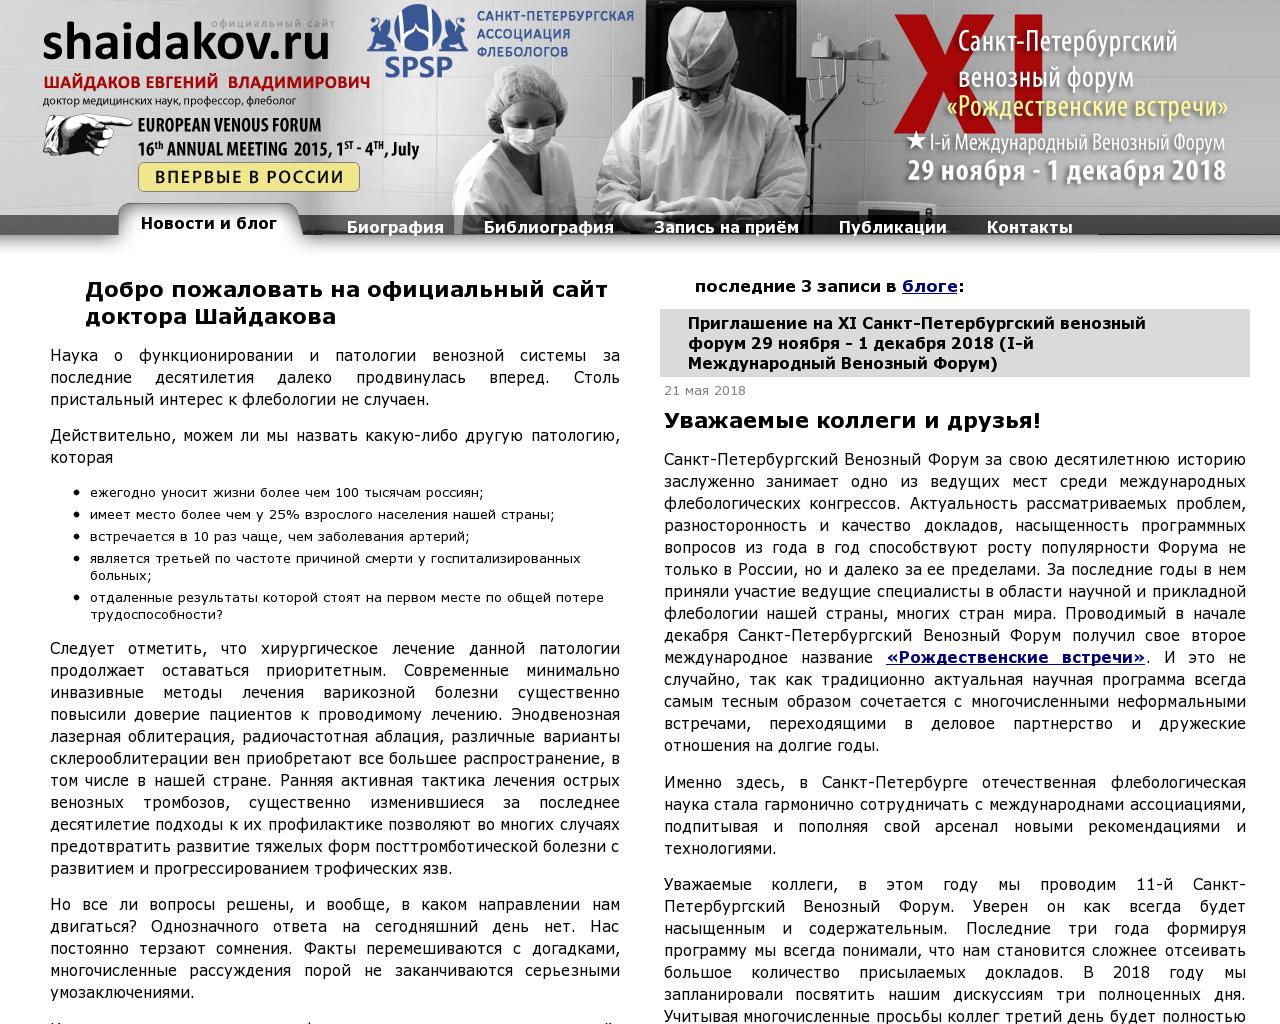 Изображение сайта shaidakov.ru в разрешении 1280x1024